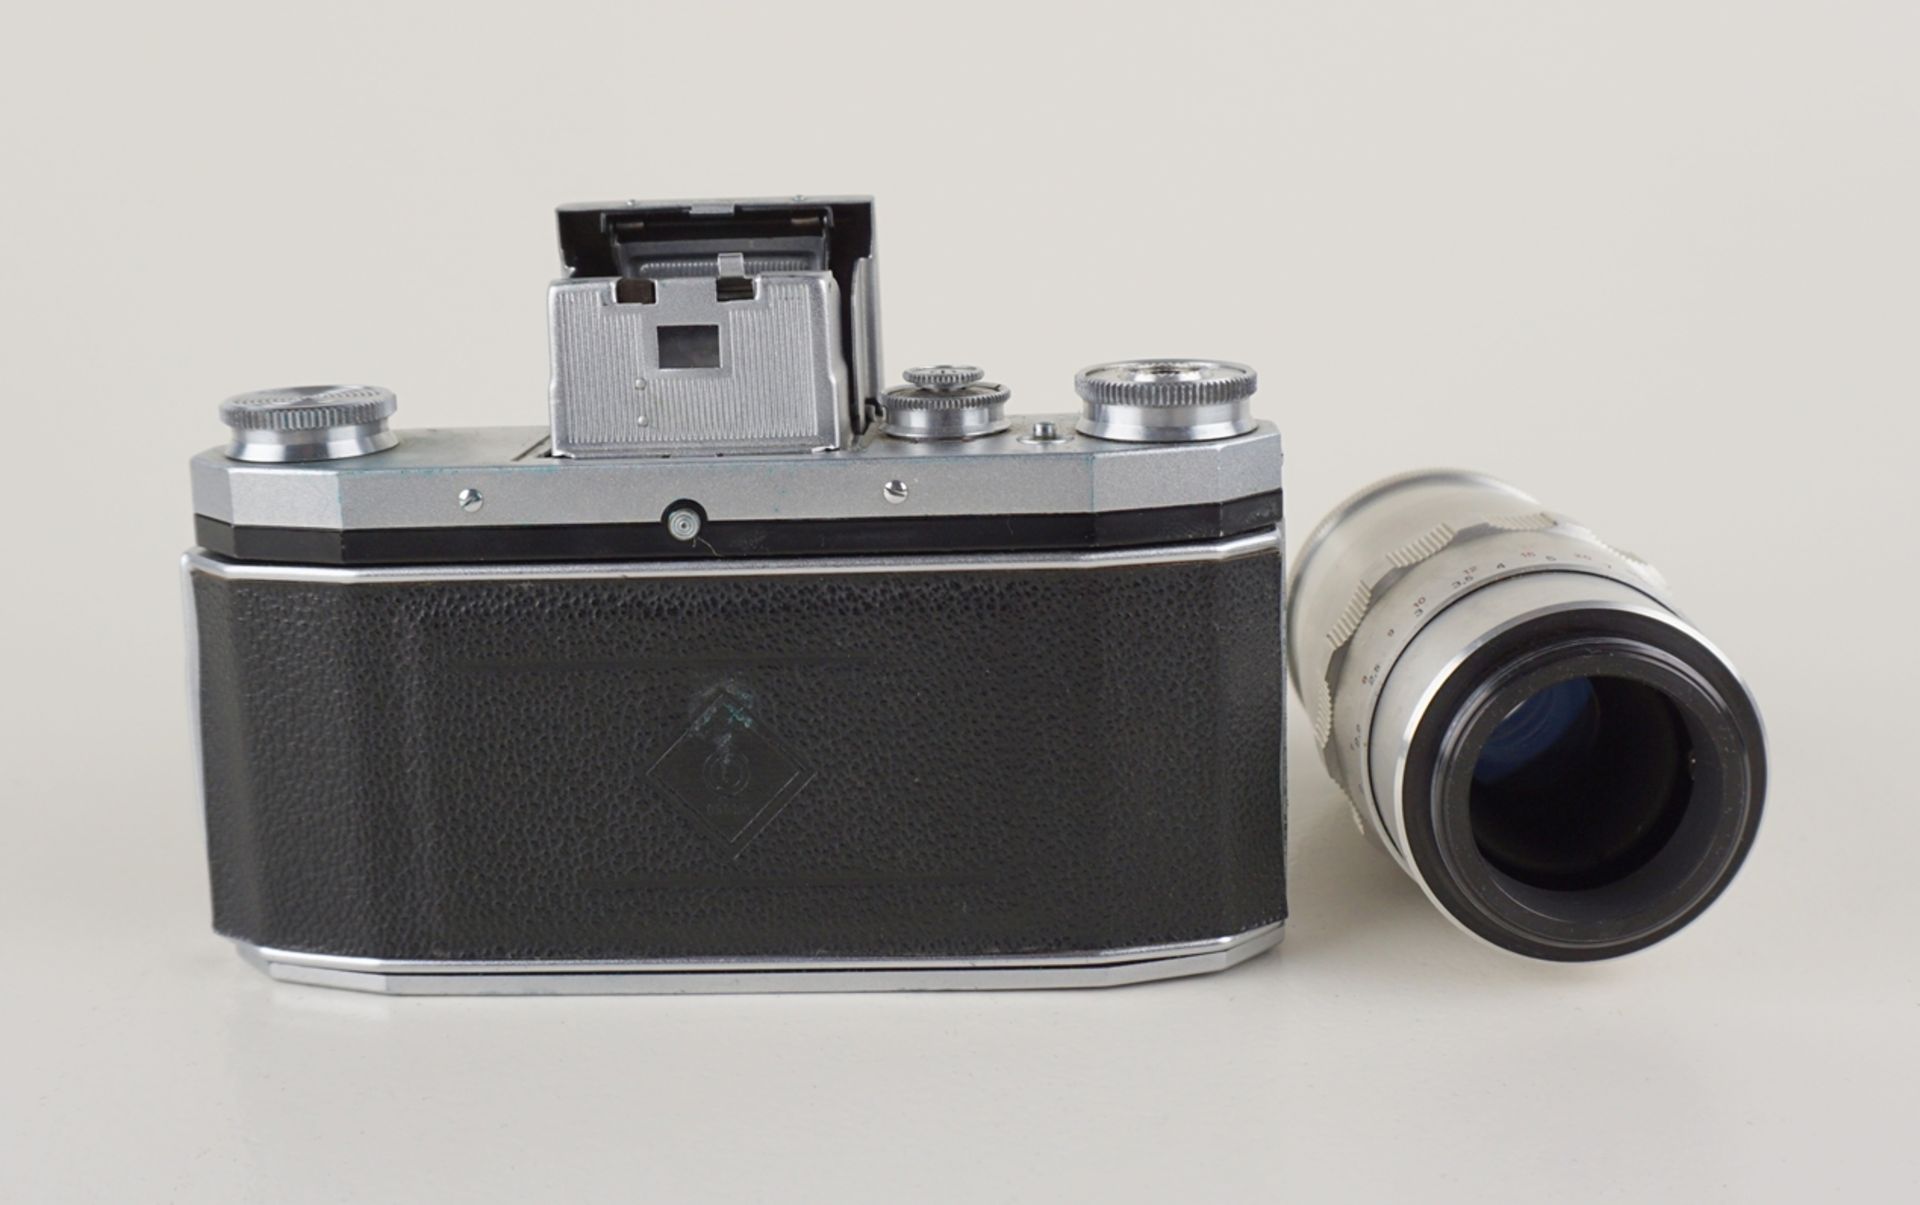 Kleinbildkamera Praktica FX mit 2 Objektiven, 1950er Jahre - Image 3 of 3